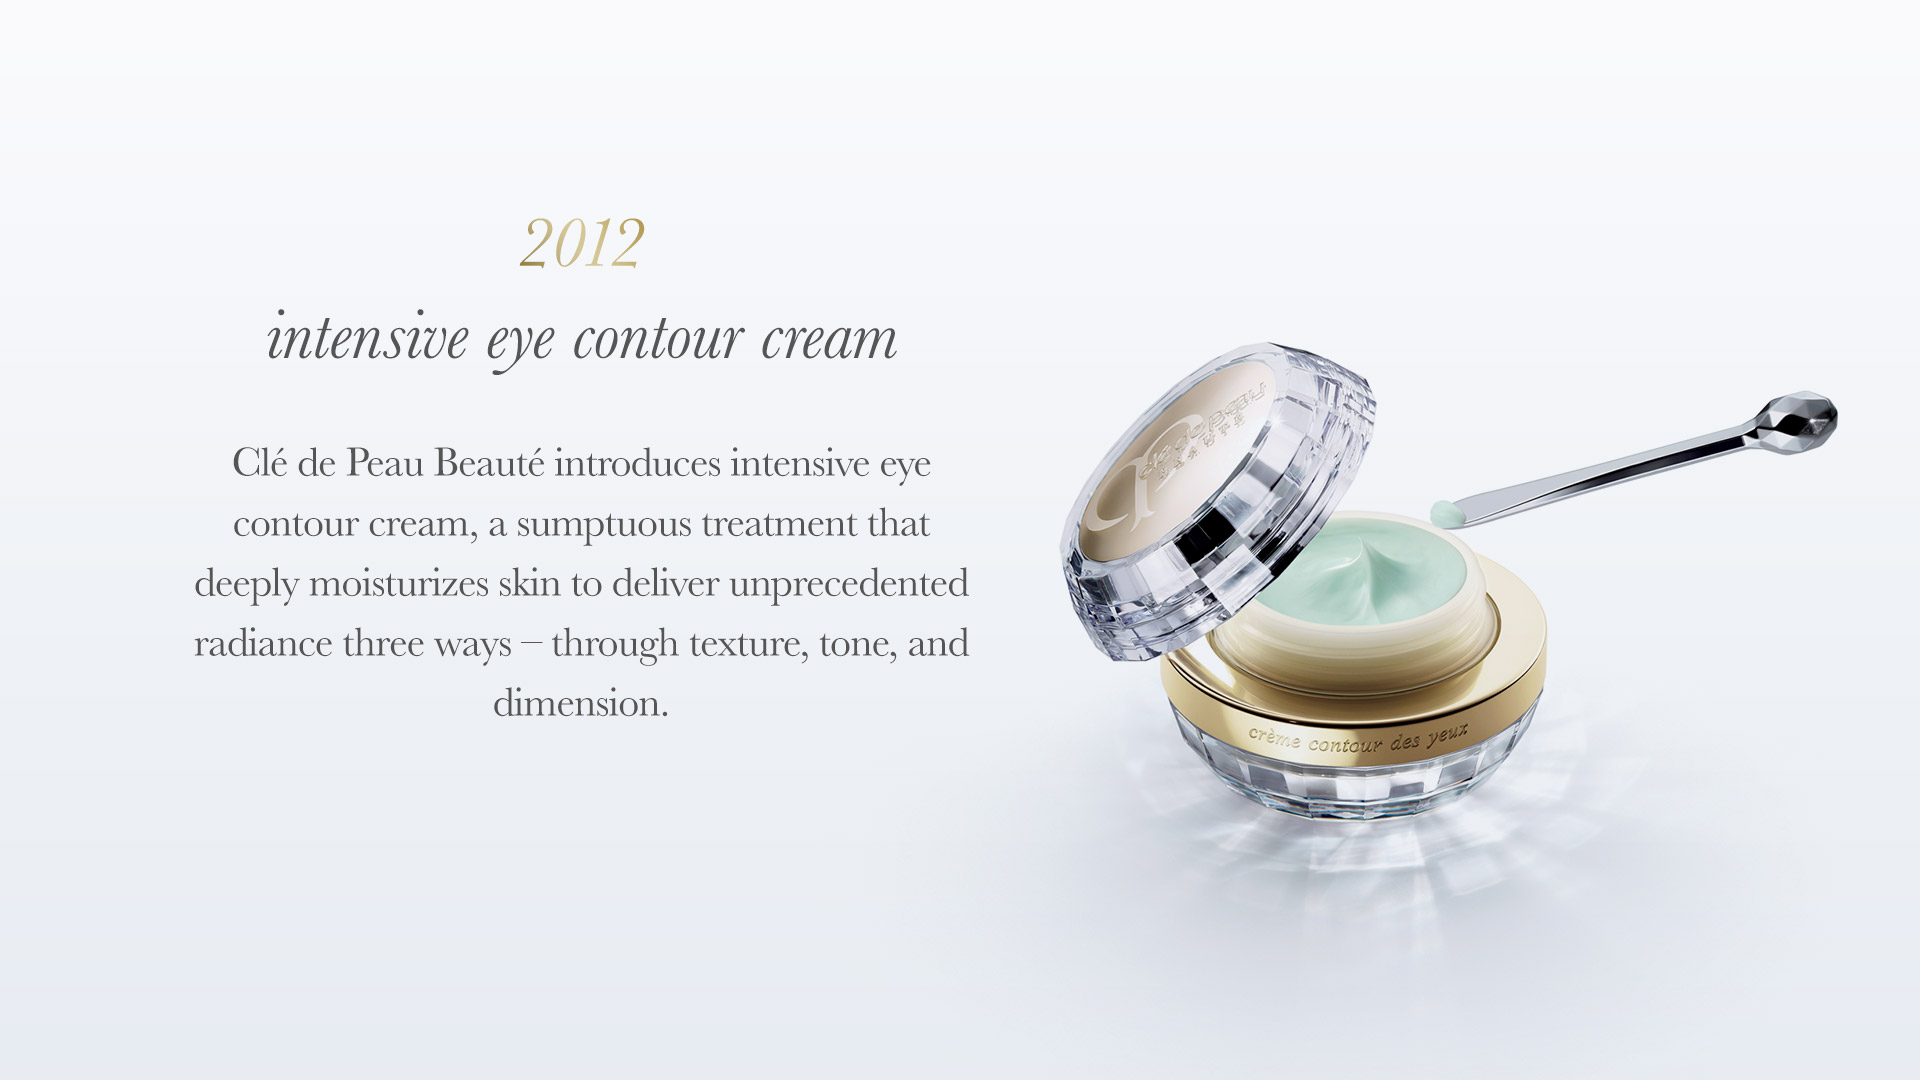 Clé de Peau Beauté introduces Intensive Eye Contour Cream, a sumptuous treatment that deeply moisturizes skin to deliver unprecedented radiance three ways - through texture, tone and dimension.